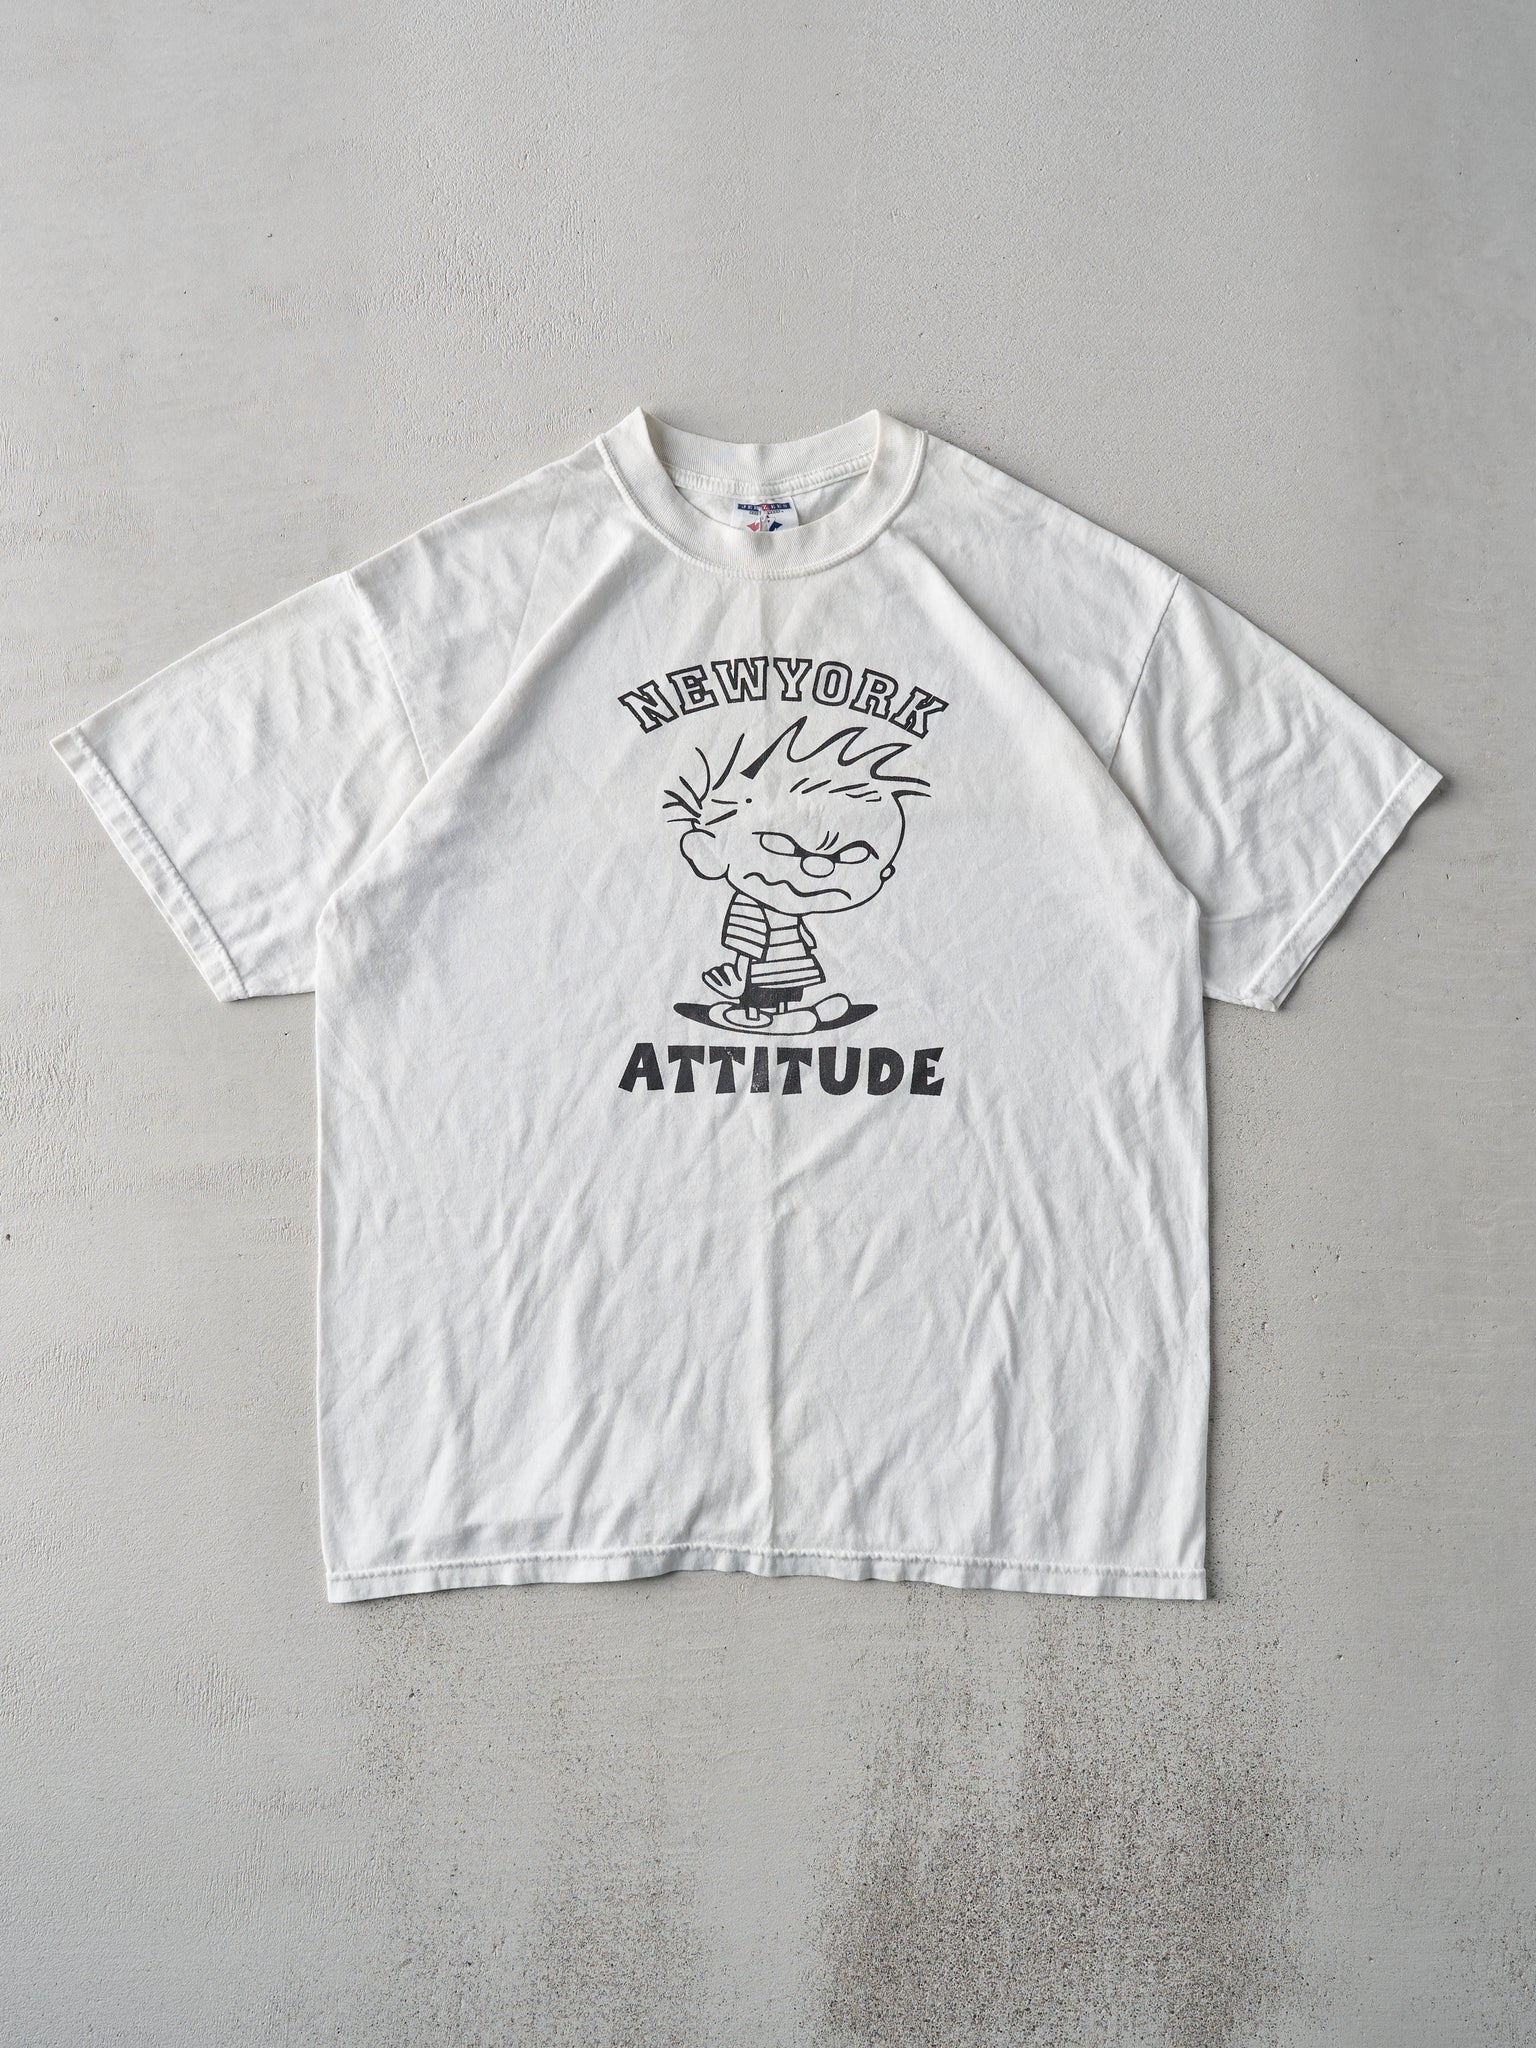 Vintage 90s White New York Attitude Tee (M/L)